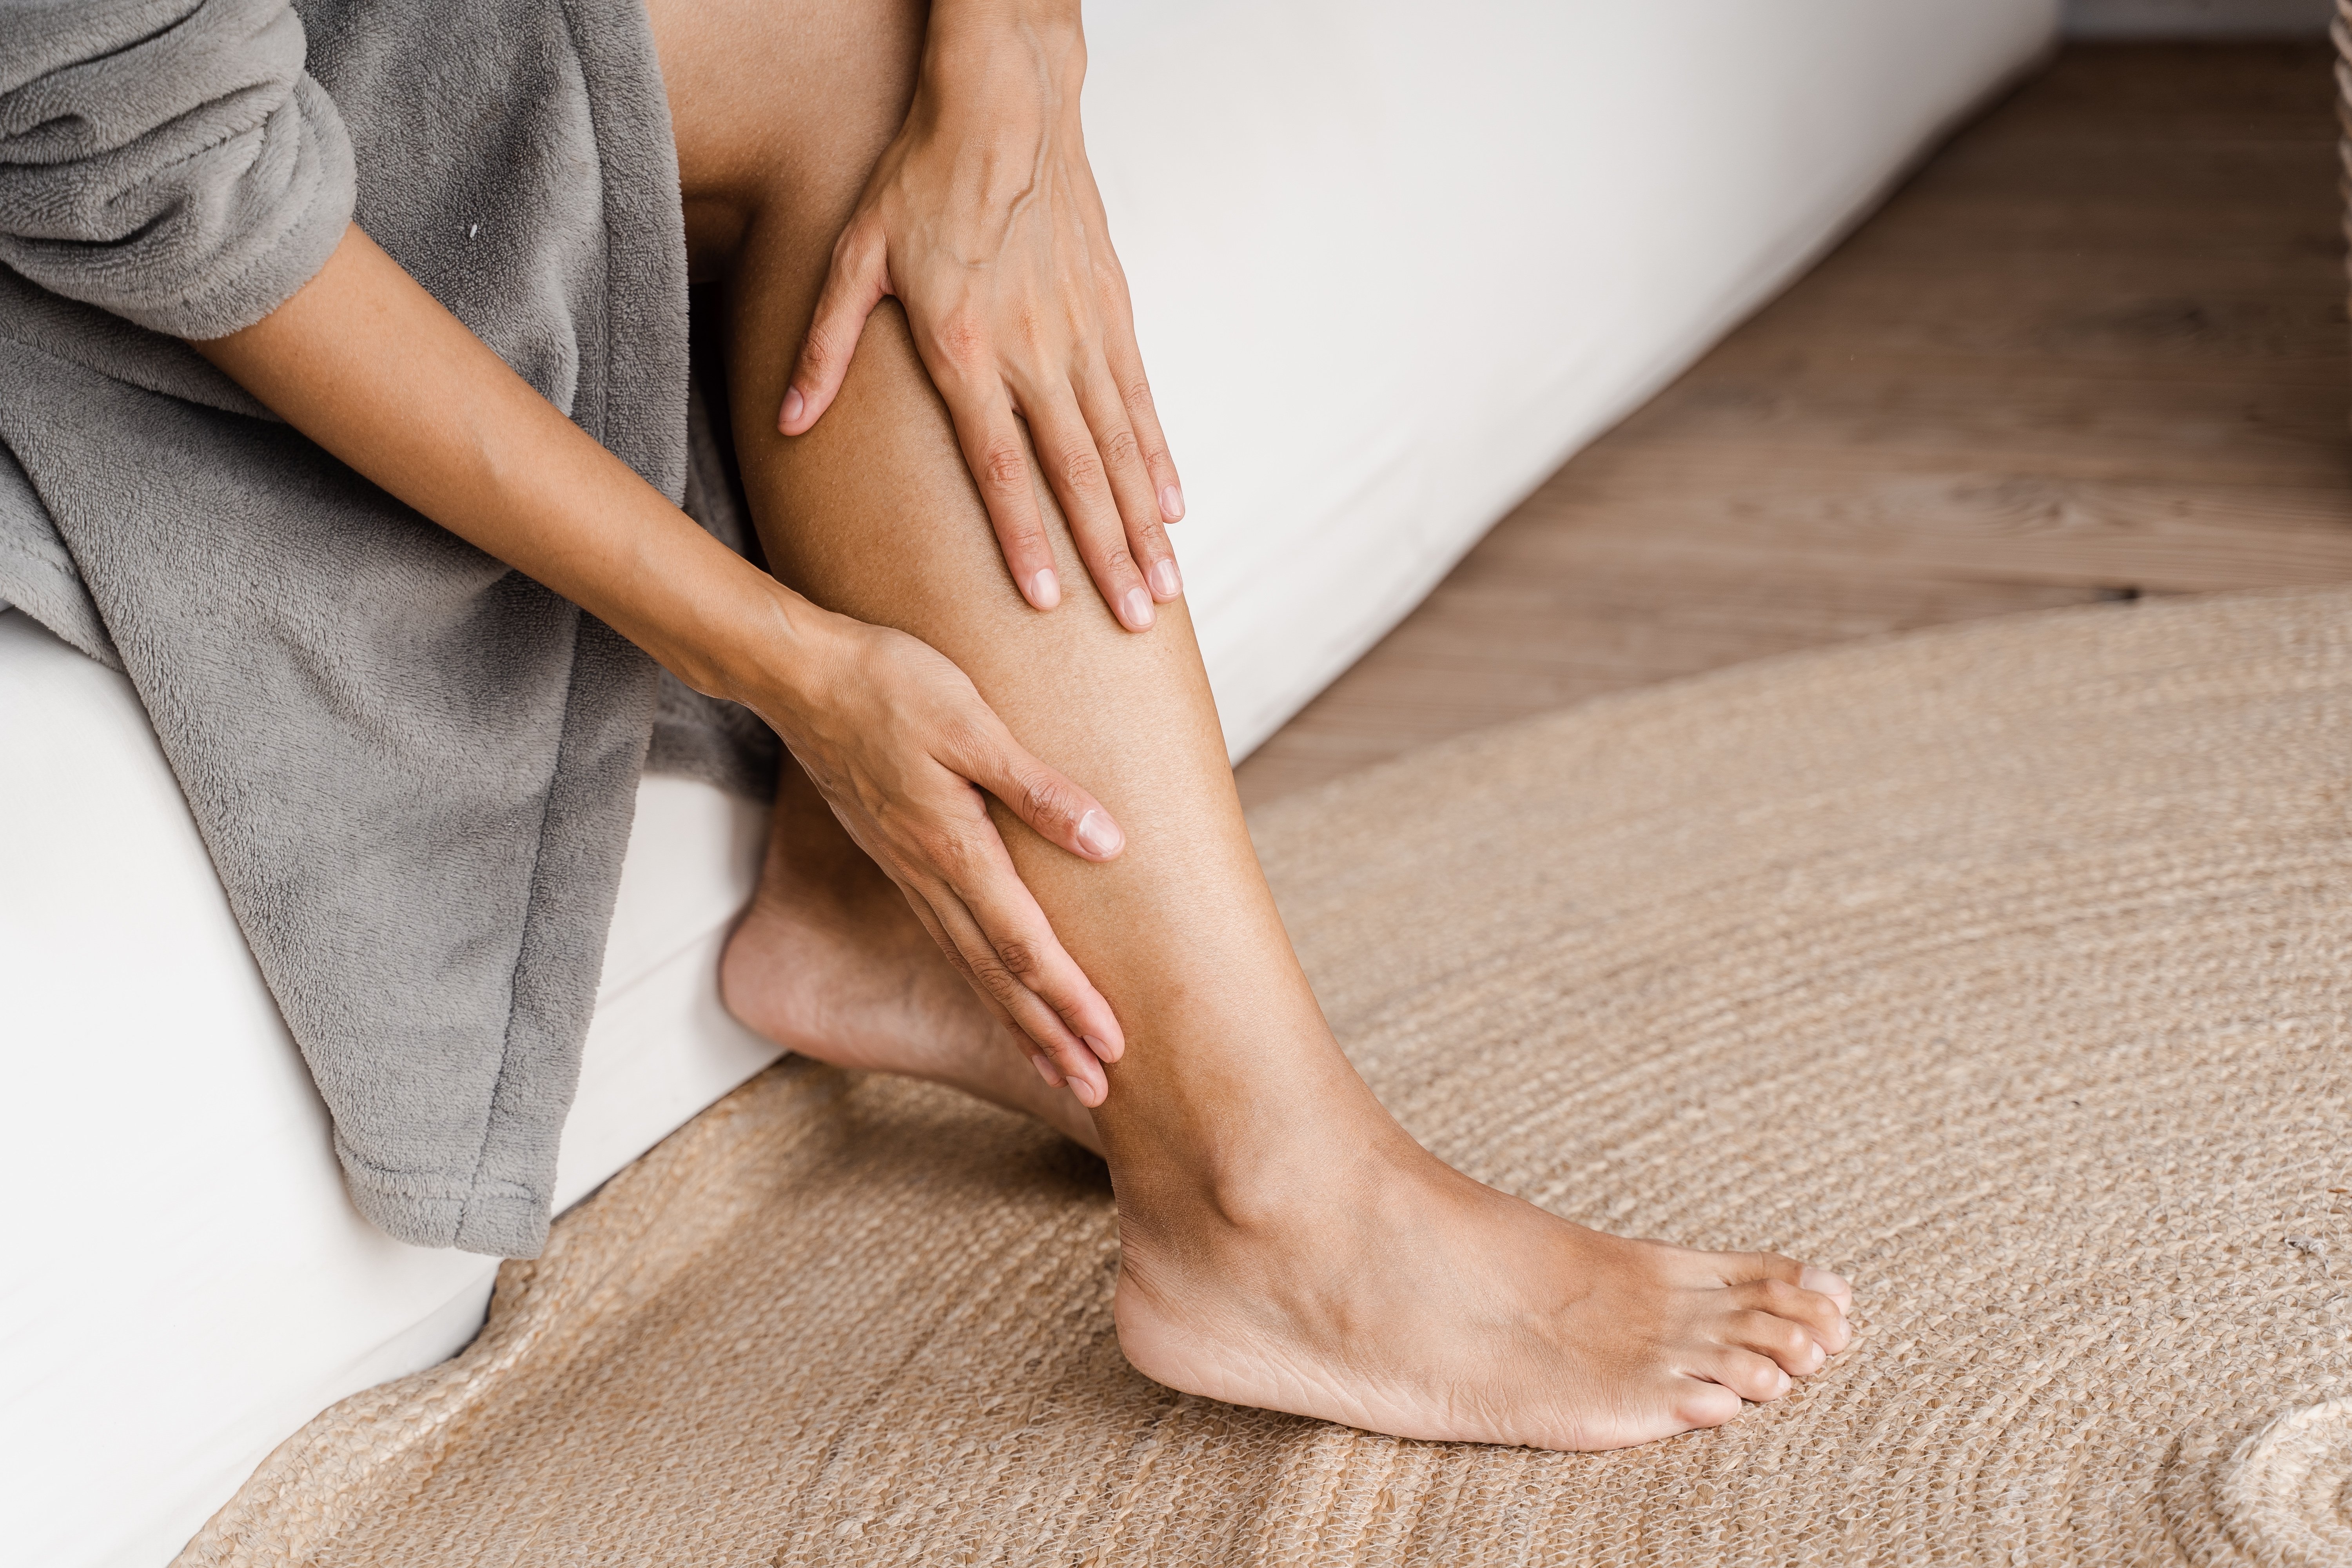 As temperaturas mais altas favorecem a dilatação dos vasos e o inchaço nas pernas, que pode vir acompanhado de dor e até piorar condições como varizes, lipedema e trombose